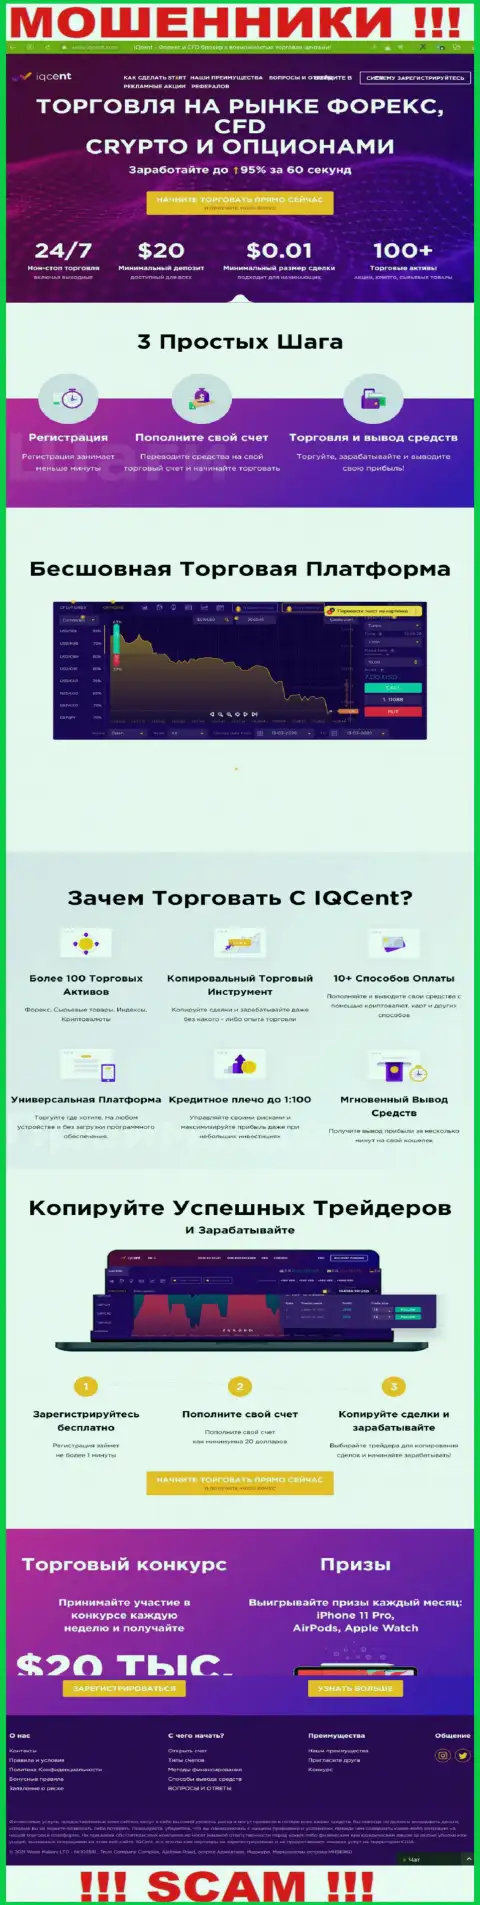 Официальный сайт мошенников IQCent, заполненный инфой для наивных людей